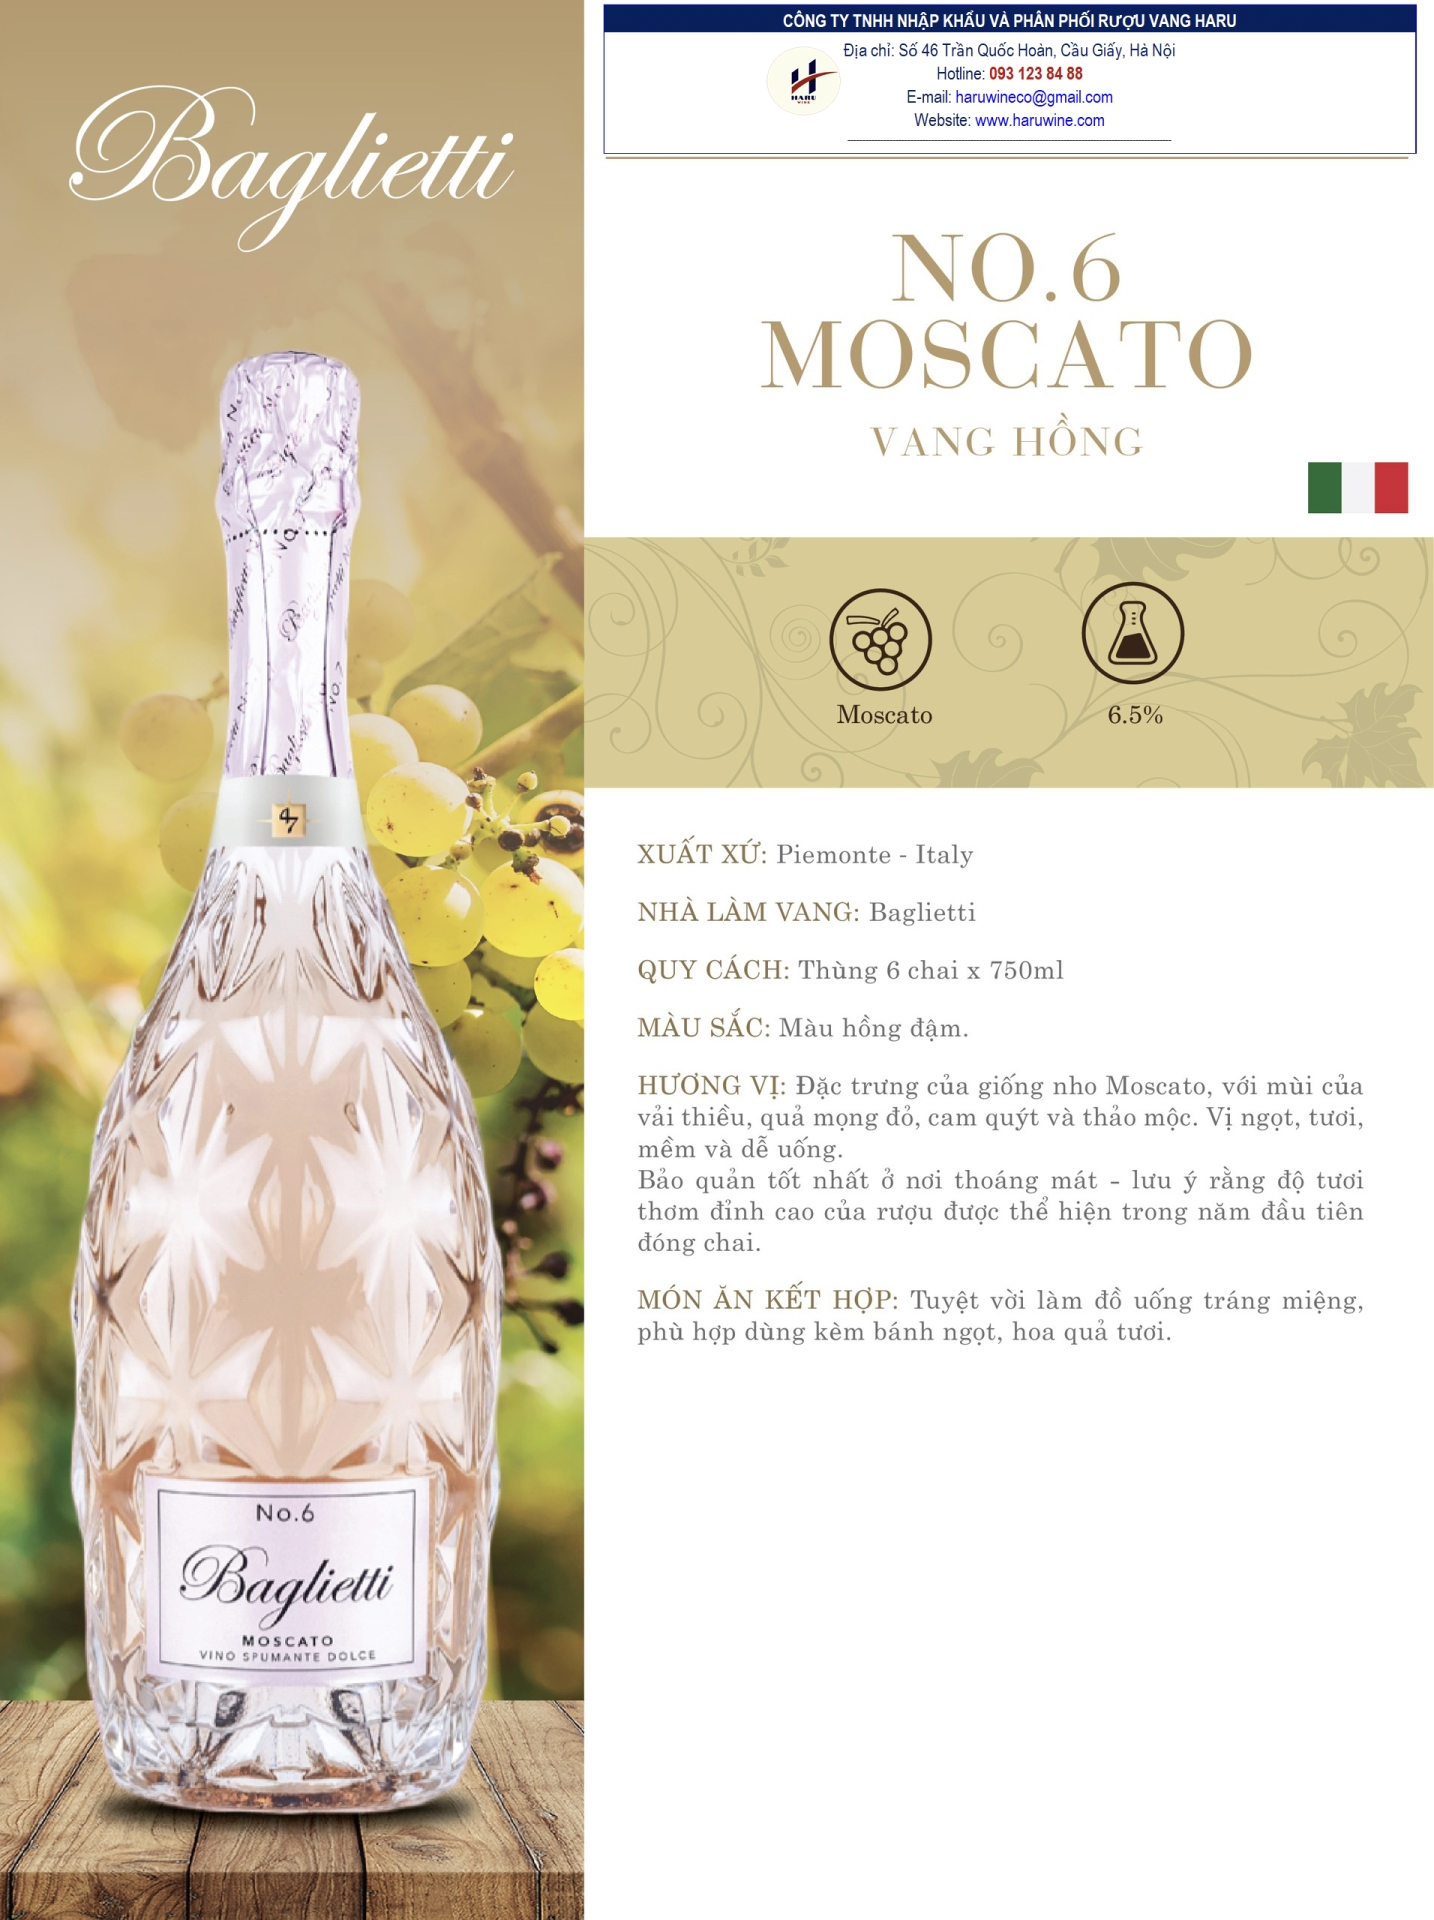 Rượu vang hồng No. 6 Moscato